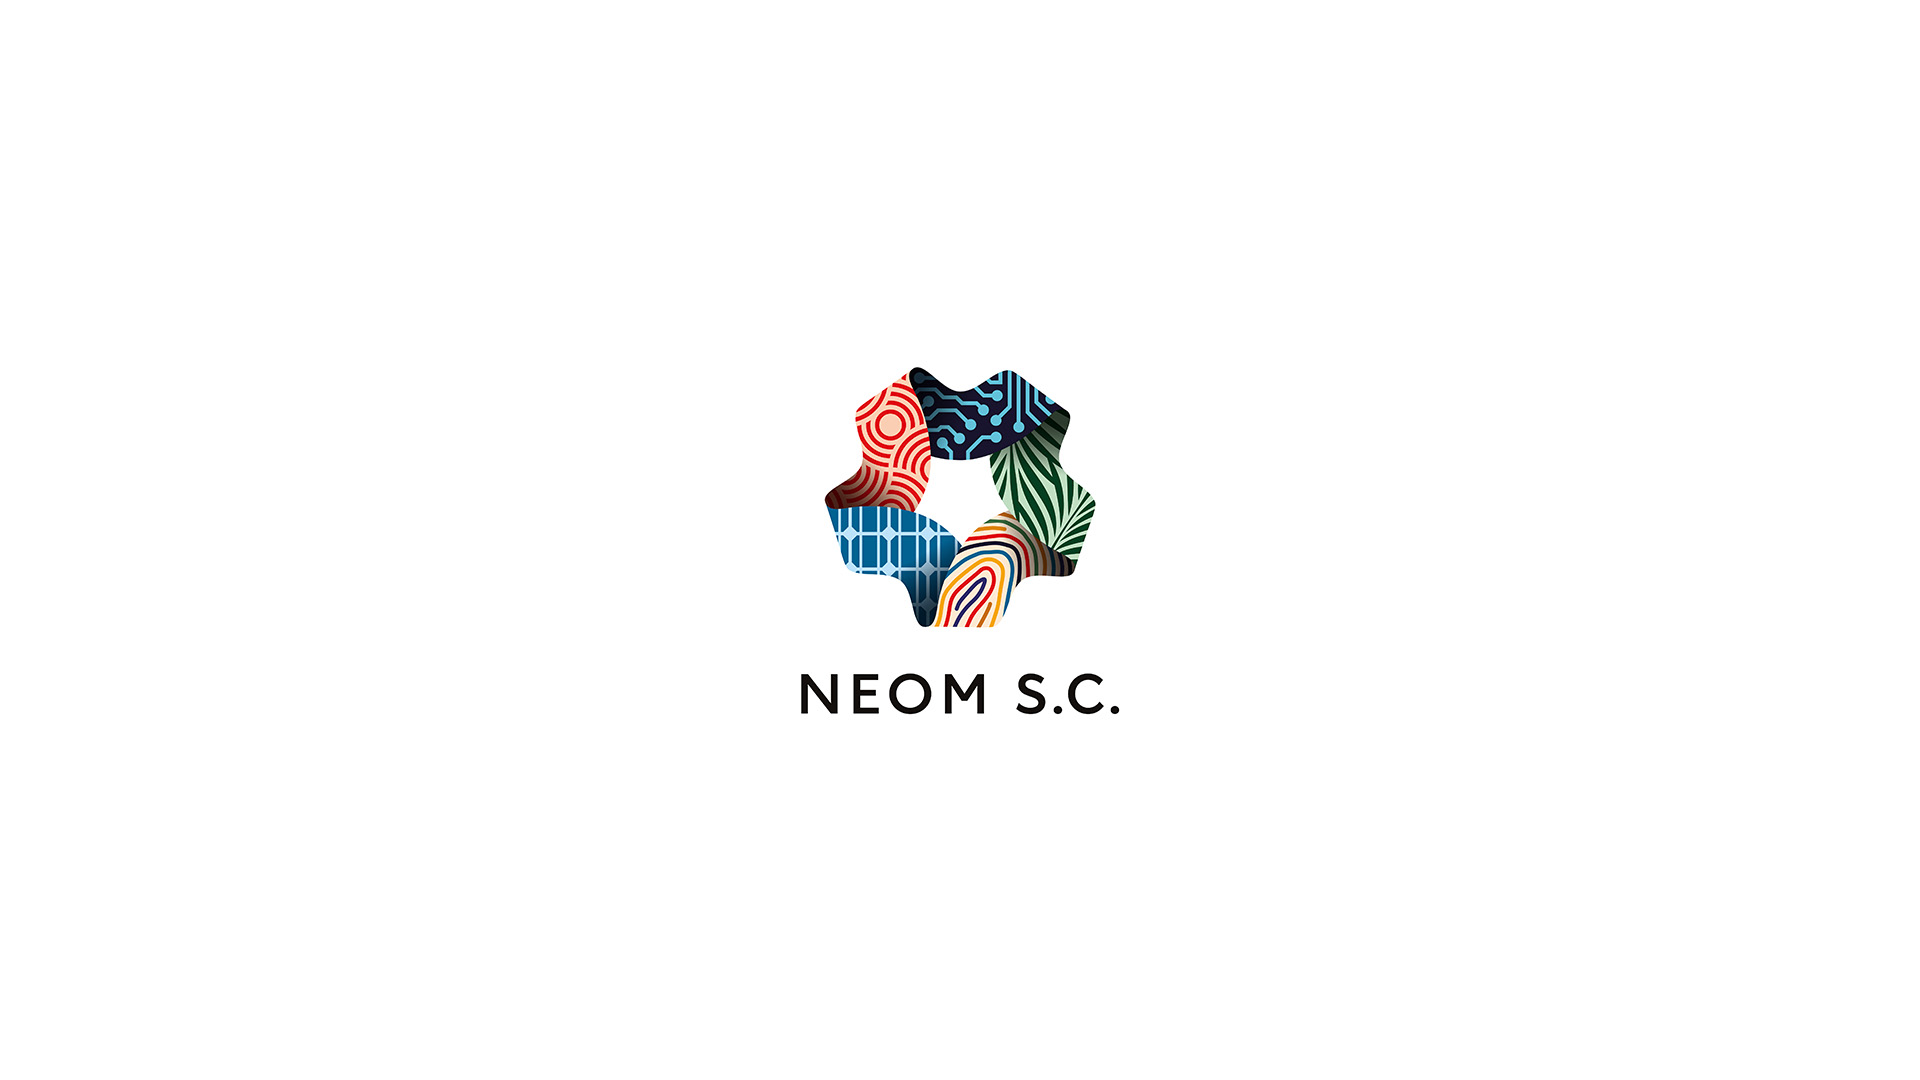 NEOM introduces NEOM Sports Club